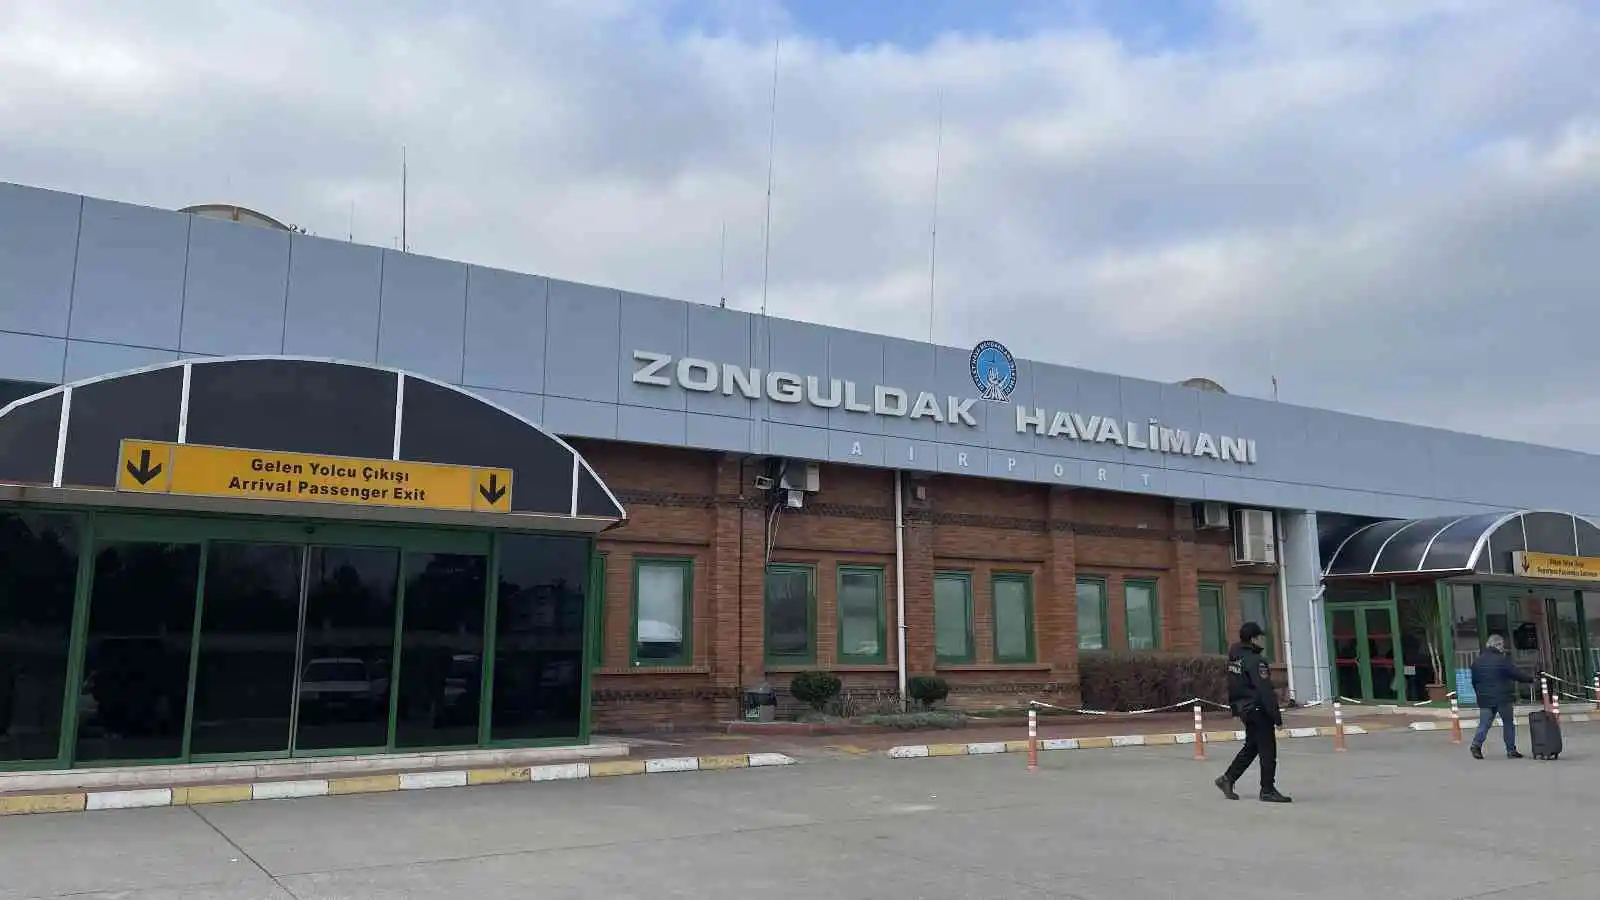 Zonguldak Havalimanı'nda çalışmalar başladı
